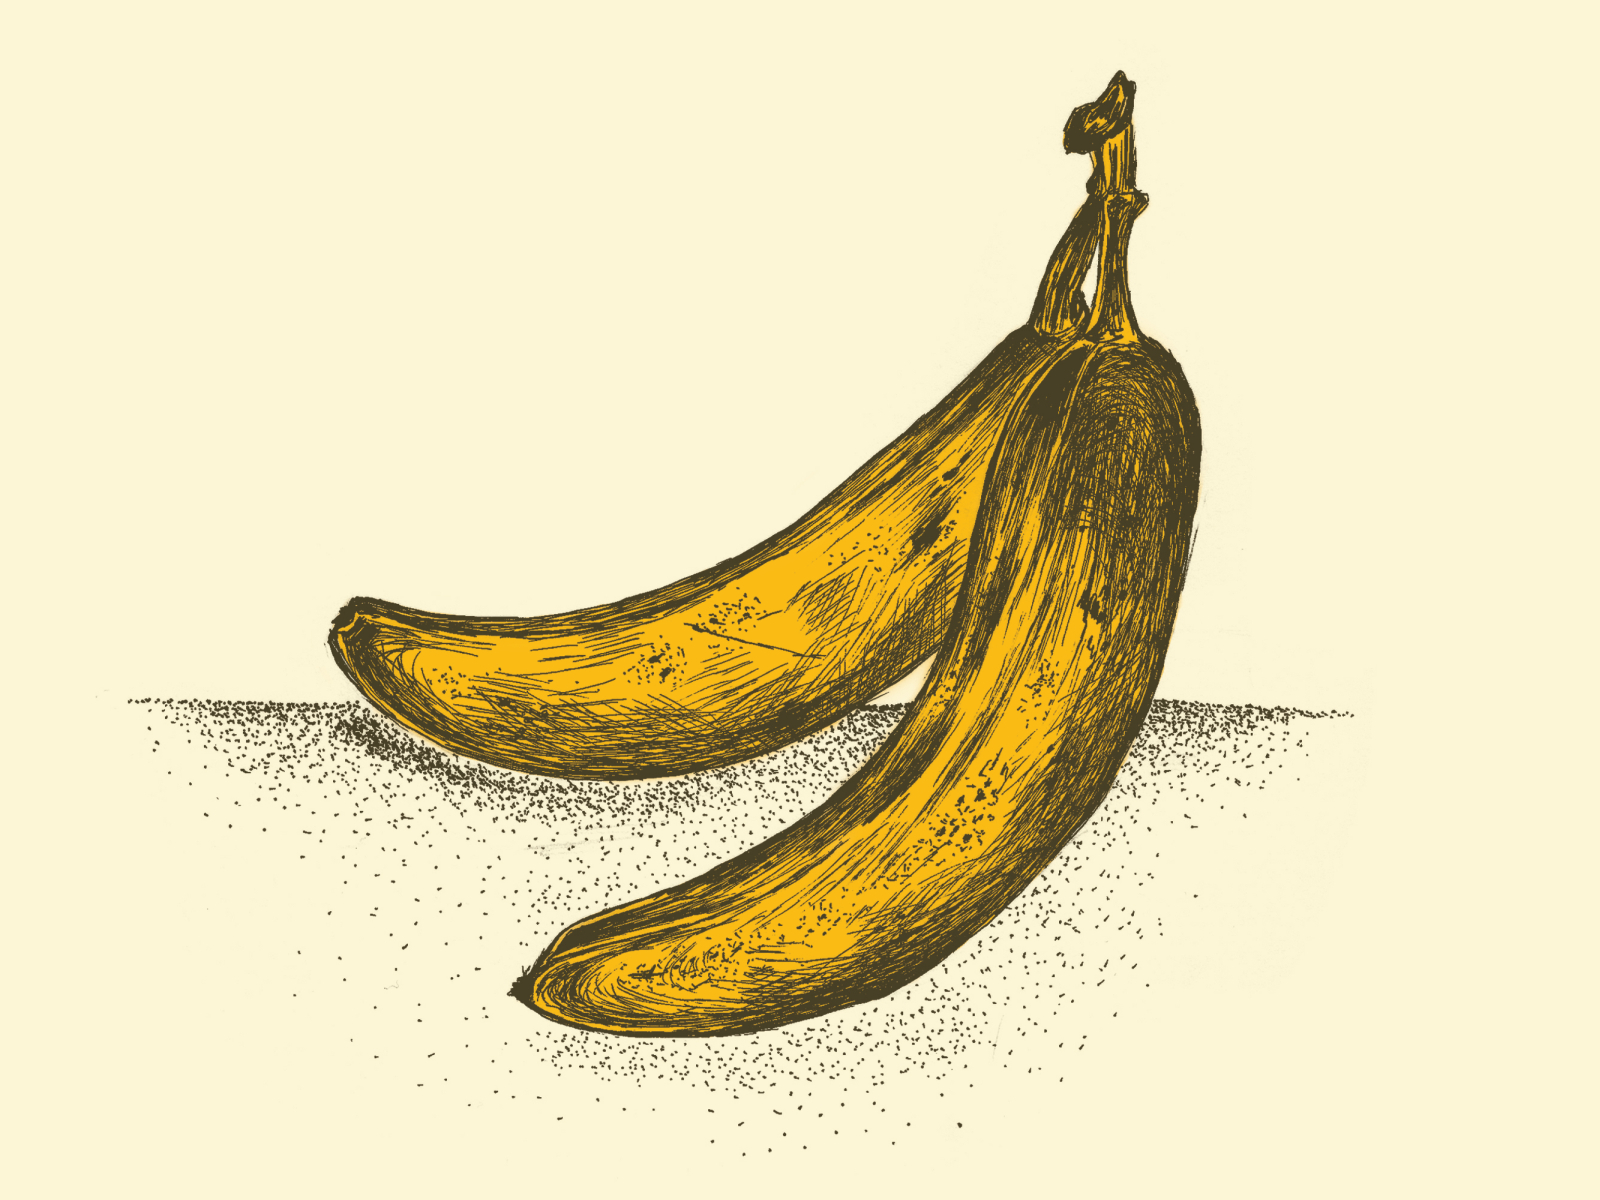 Banana Drawing Cliparts, Stock Vector and Royalty Free Banana Drawing  Illustrations